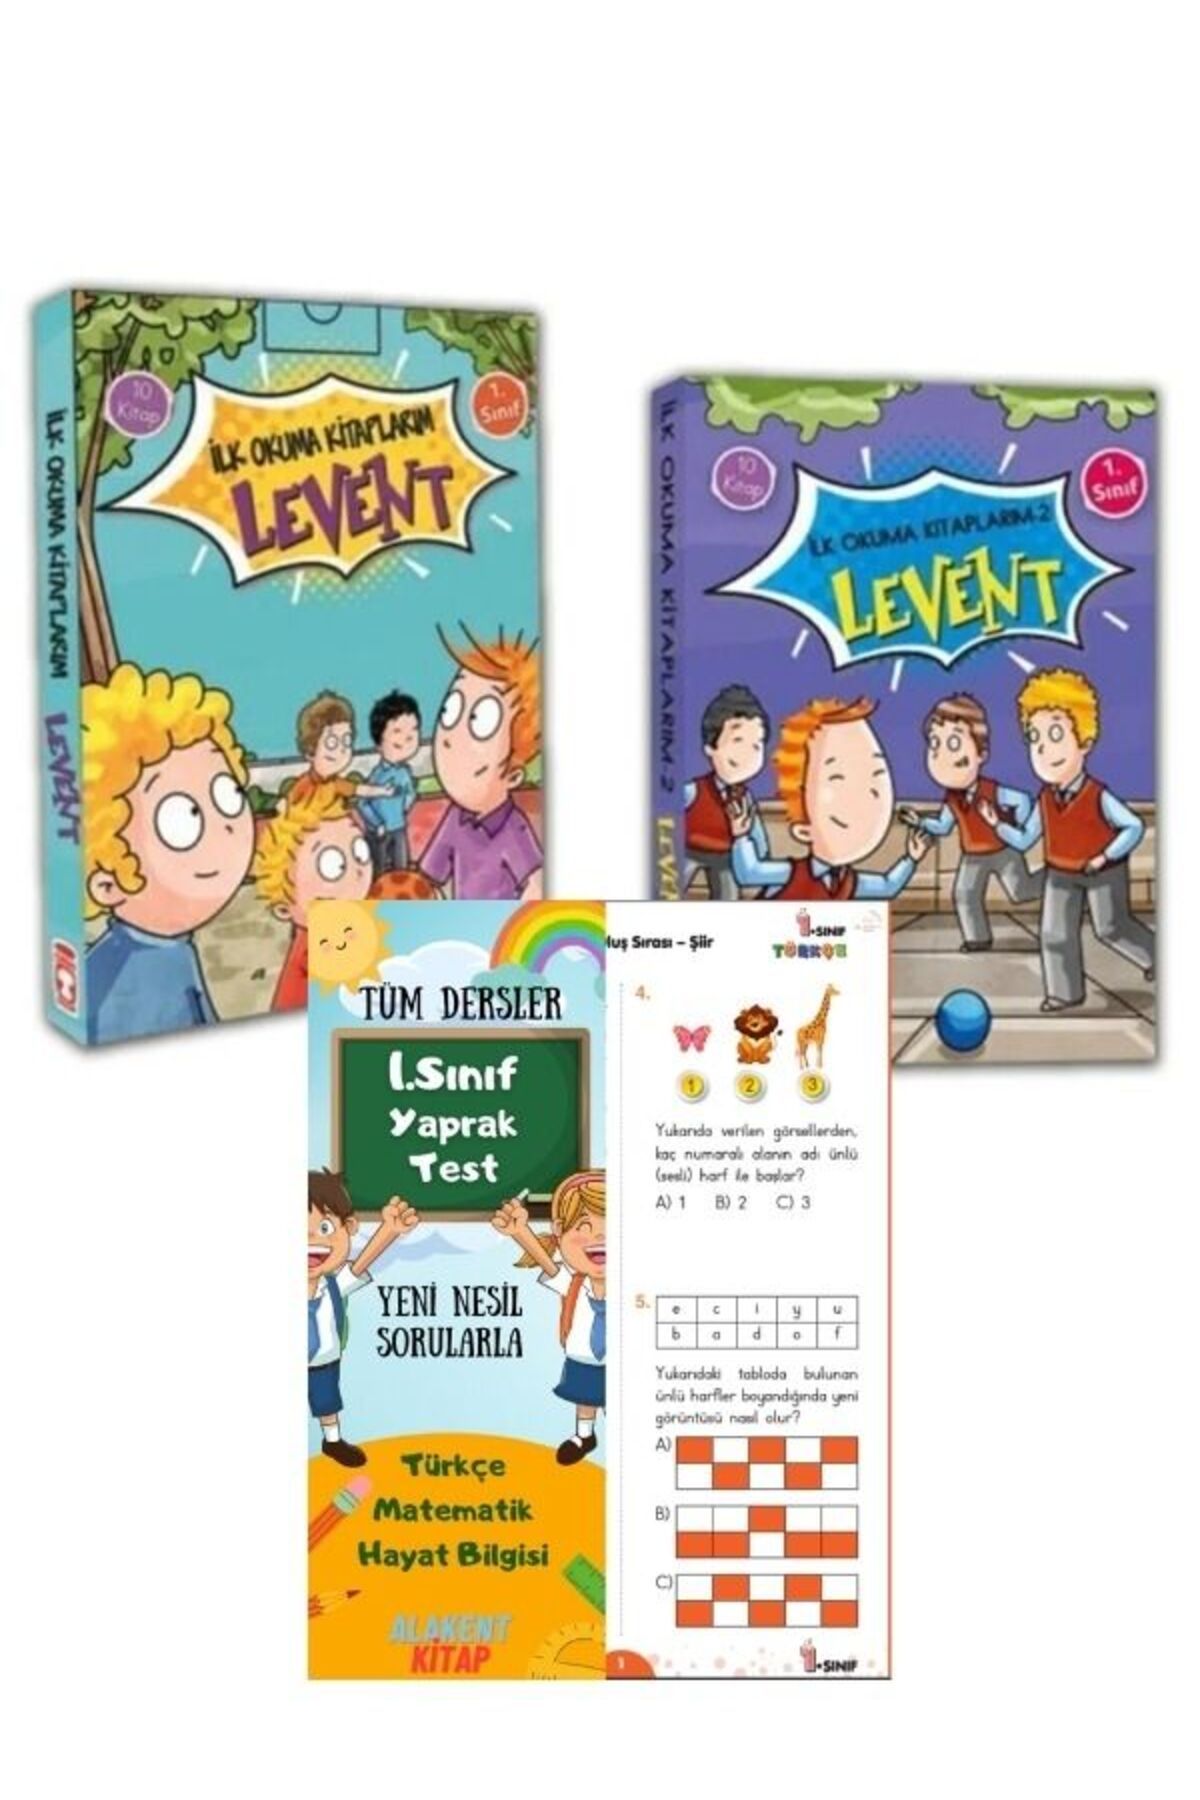 Timaş Çocuk levent ilk okuma kitaplarım 1 ve 2 serisi + Alakent 1. sınıf yaprak test